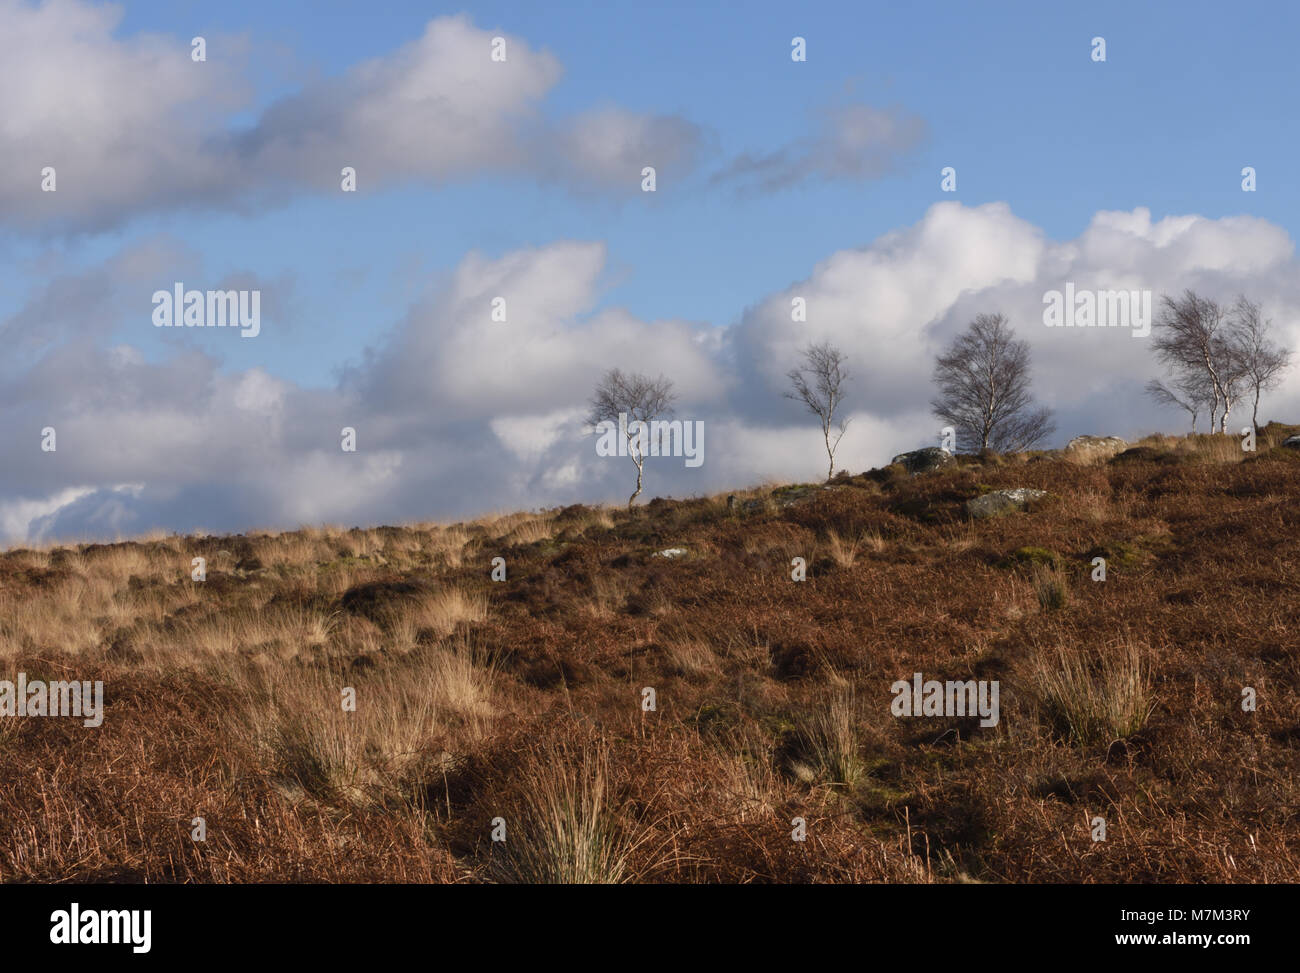 Deshojado invierno Plata abedul (Betula pendula) árboles que crecen entre los muertos helecho, brezo y pastos en Frogatt Edge. Frogatt, Derbyshire, Reino Unido. Foto de stock